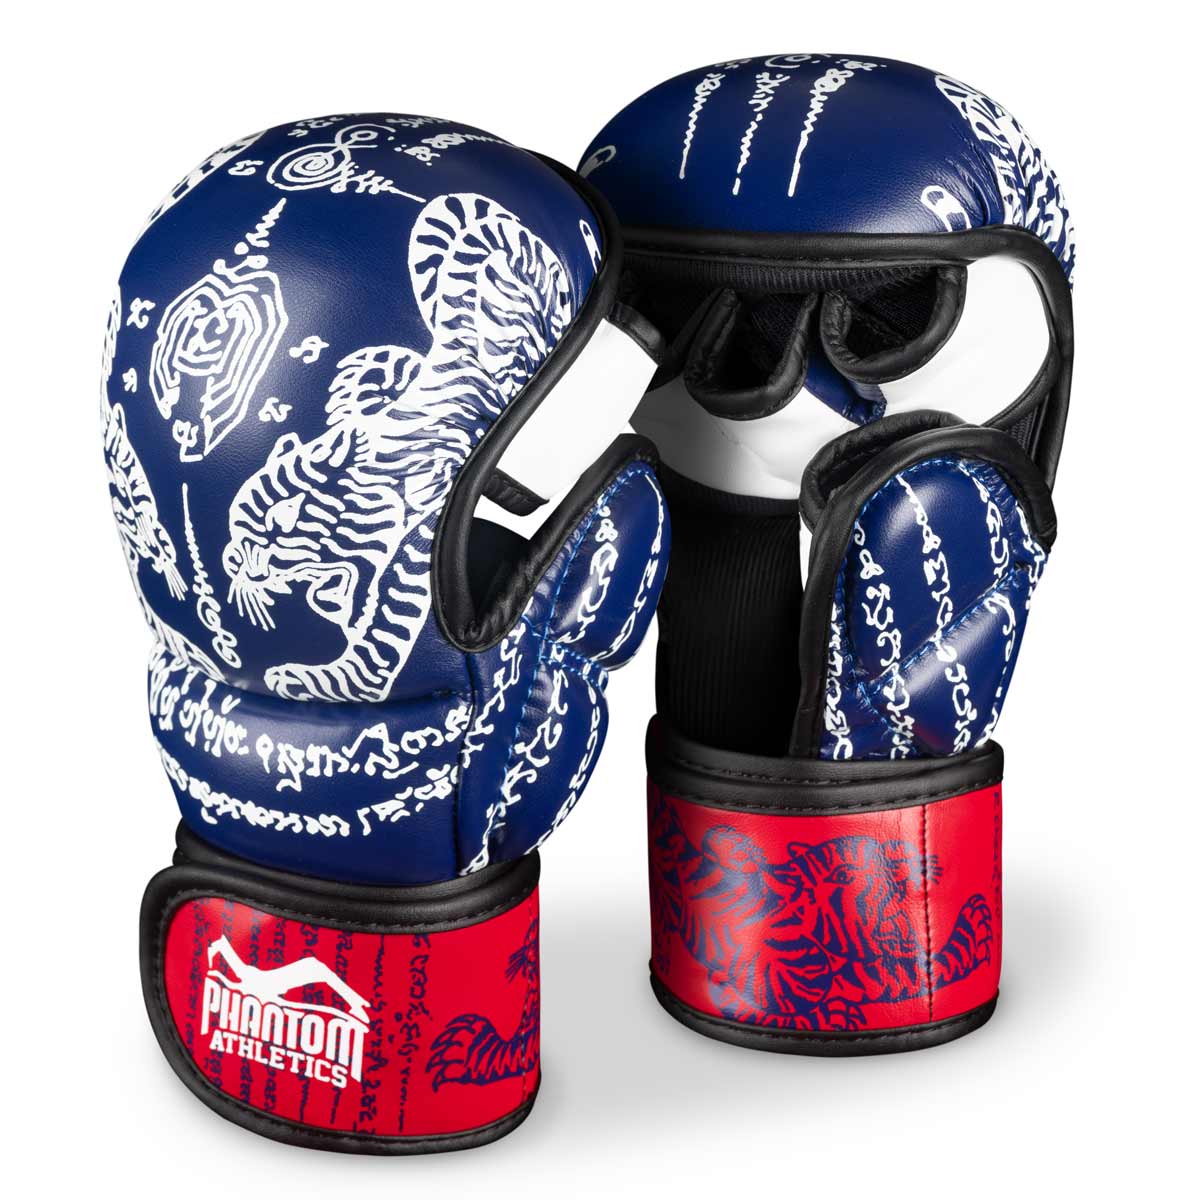 Phantom Muay Thai rukavice za tajlandski boks i MMA sparinge, natjecanja i treninge. U tradicionalnom Sak Yant dizajnu i plavo/crvenoj boji.